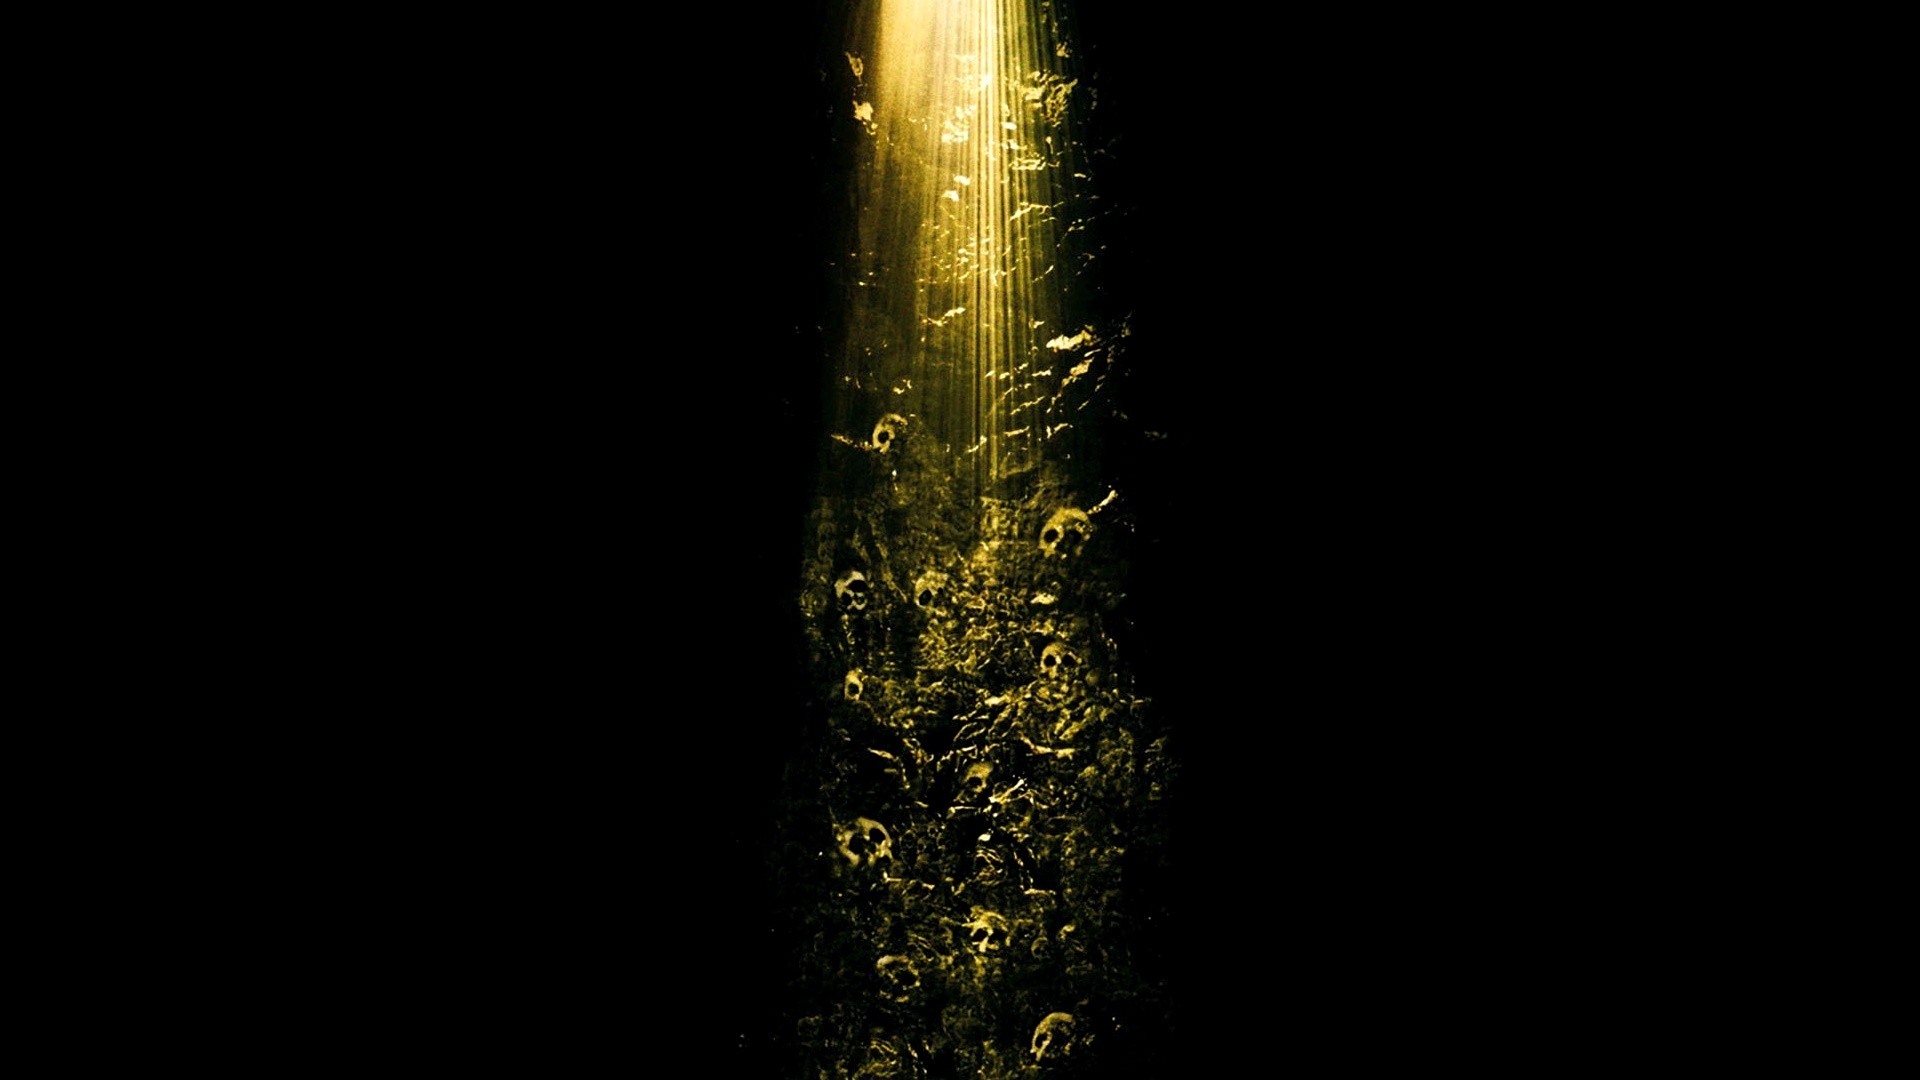 Скачать обои Пещера (2005) на телефон бесплатно